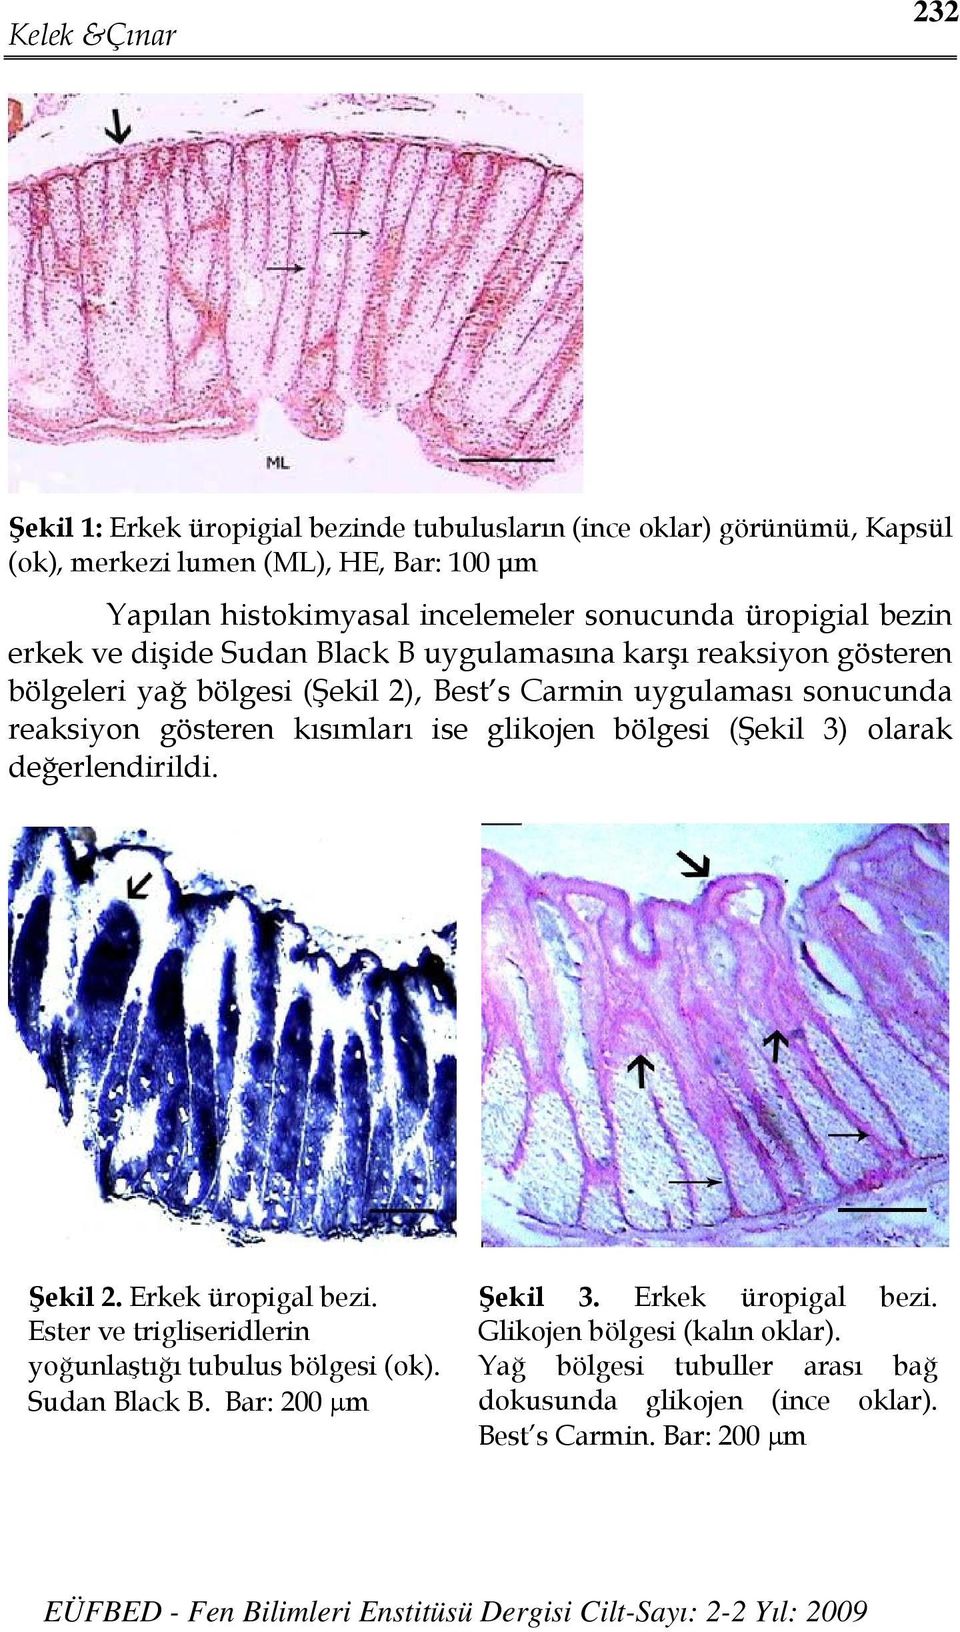 gösteren kısımları ise glikojen bölgesi (Şekil 3) olarak değerlendirildi. Şekil 2. Erkek üropigal bezi. Ester ve trigliseridlerin yoğunlaştığı tubulus bölgesi (ok).